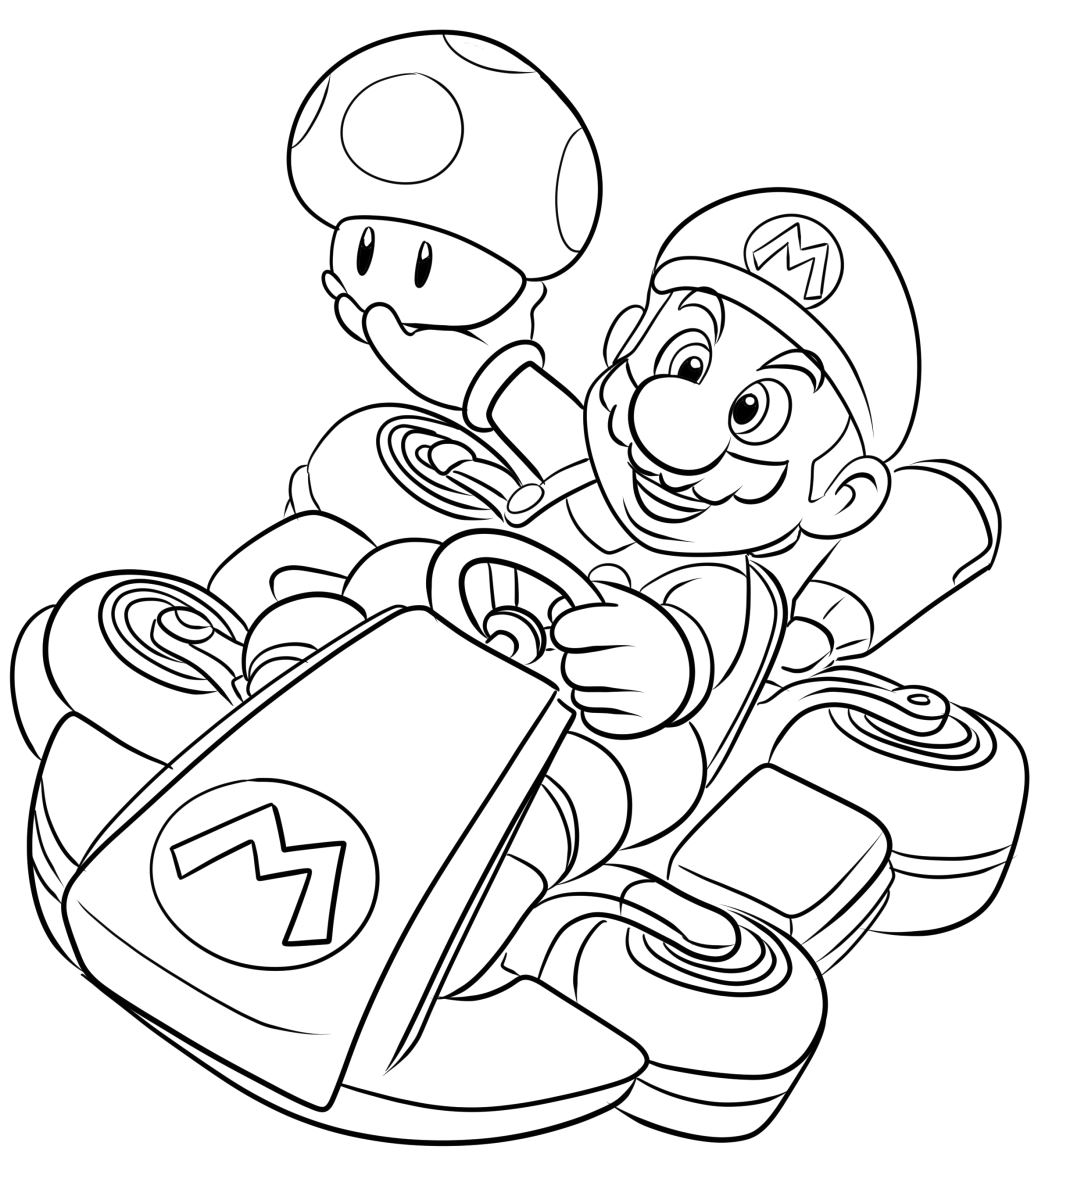 Tekening 04 van Mario Kart om af te drukken en te kleuren